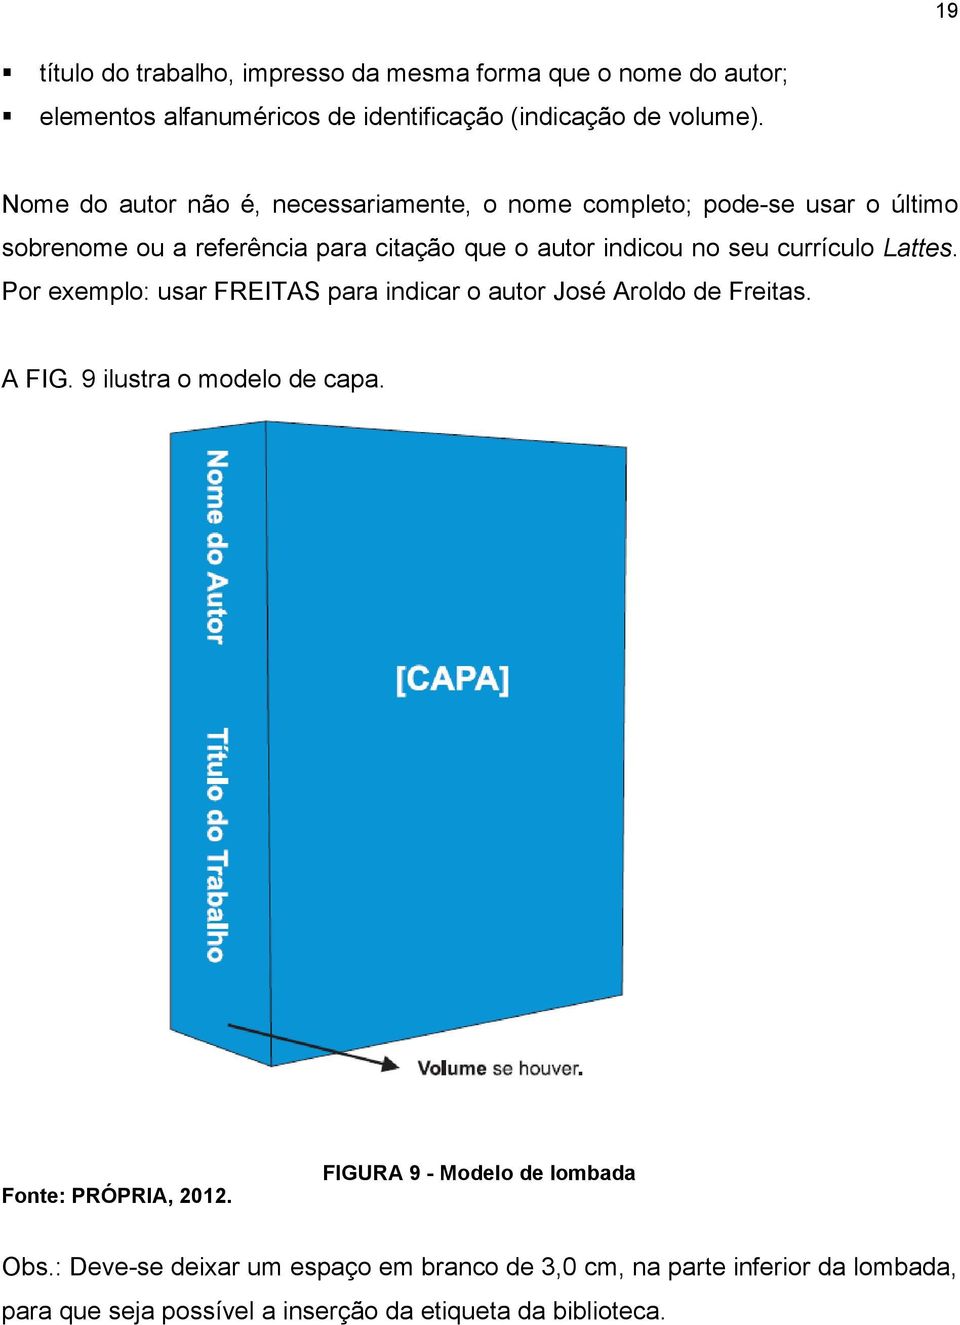 currículo Lattes. Por exemplo: usar FREITAS para indicar o autor José Aroldo de Freitas. A FIG. 9 ilustra o modelo de capa. Fonte: PRÓPRIA, 2012.